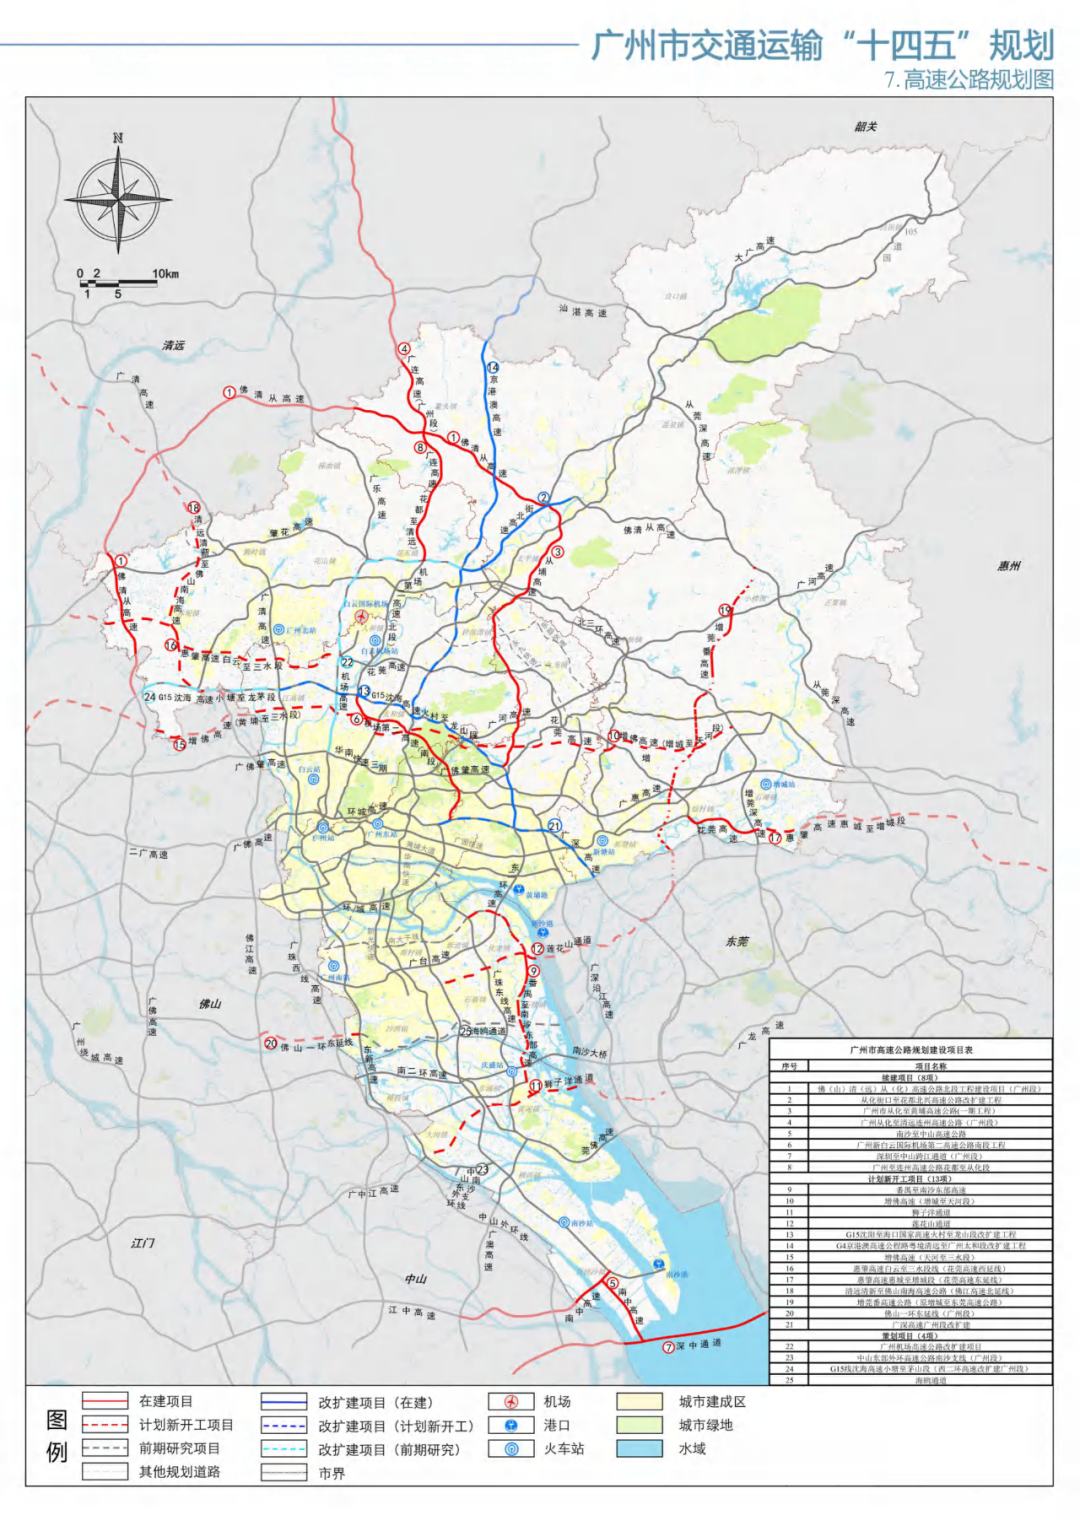 重磅投资6507亿广州市交通运输十四五规划发布多条地铁城际规划线路